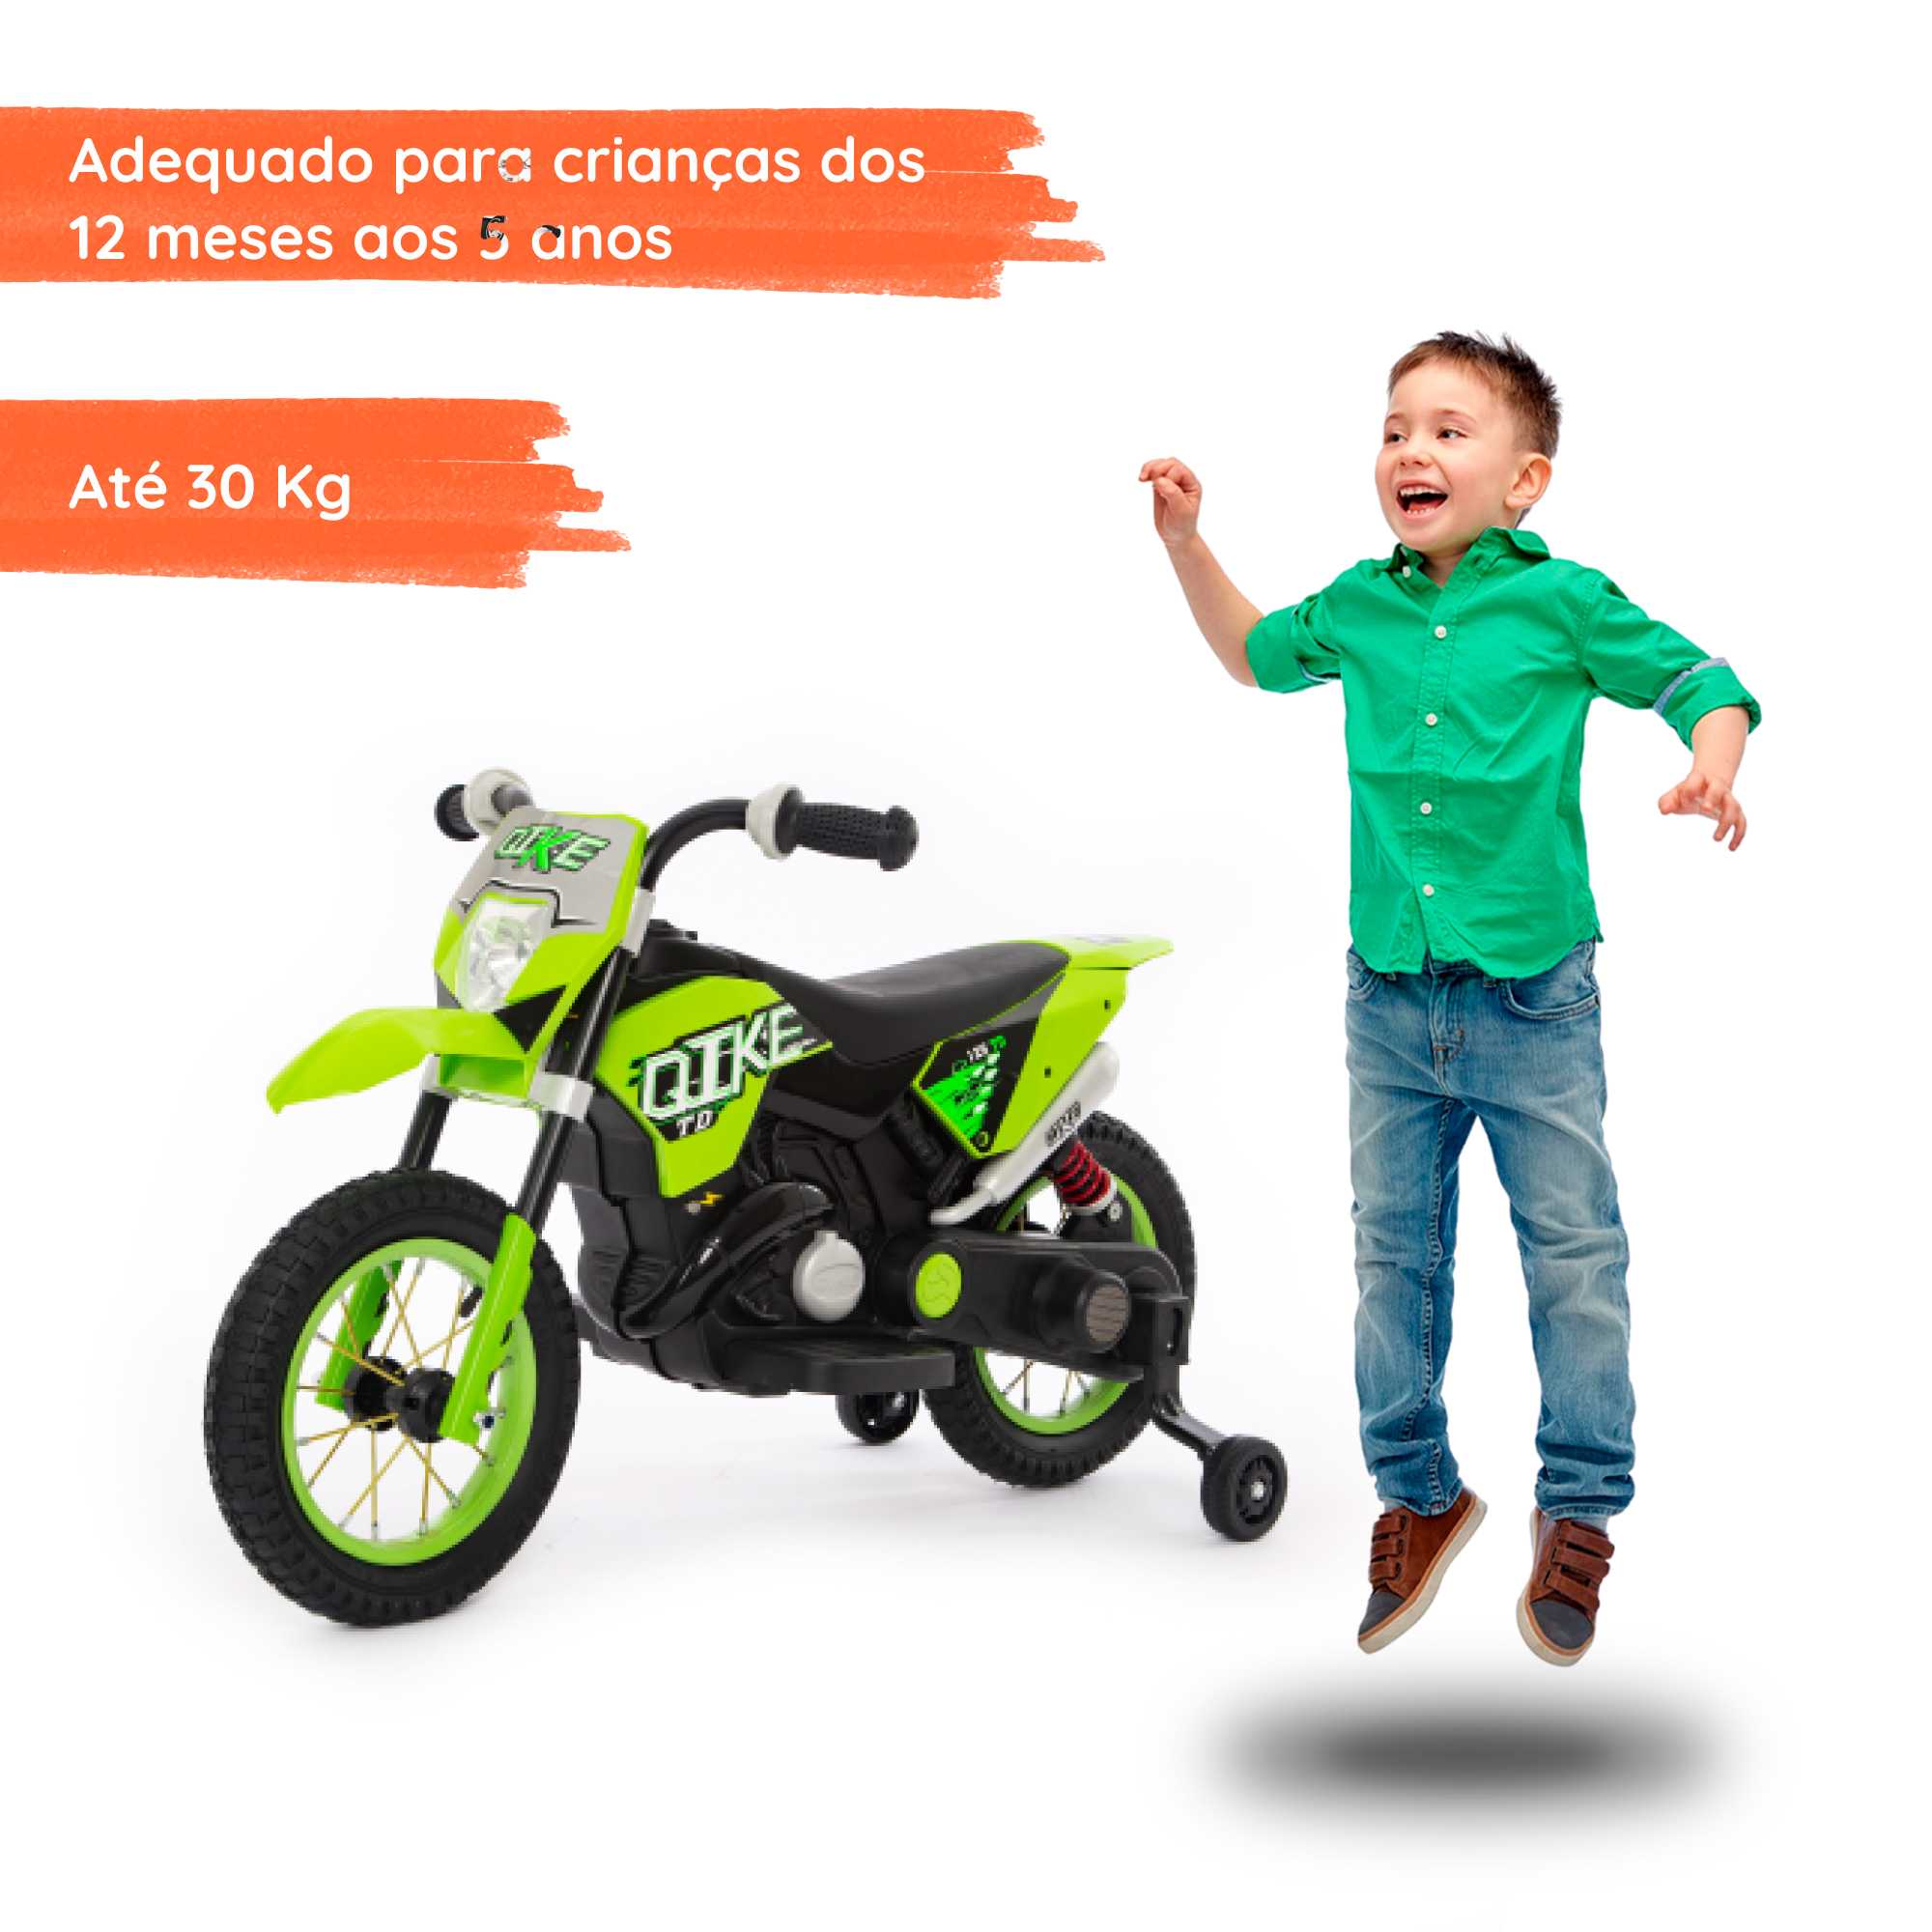 Moto cross verde com criança 